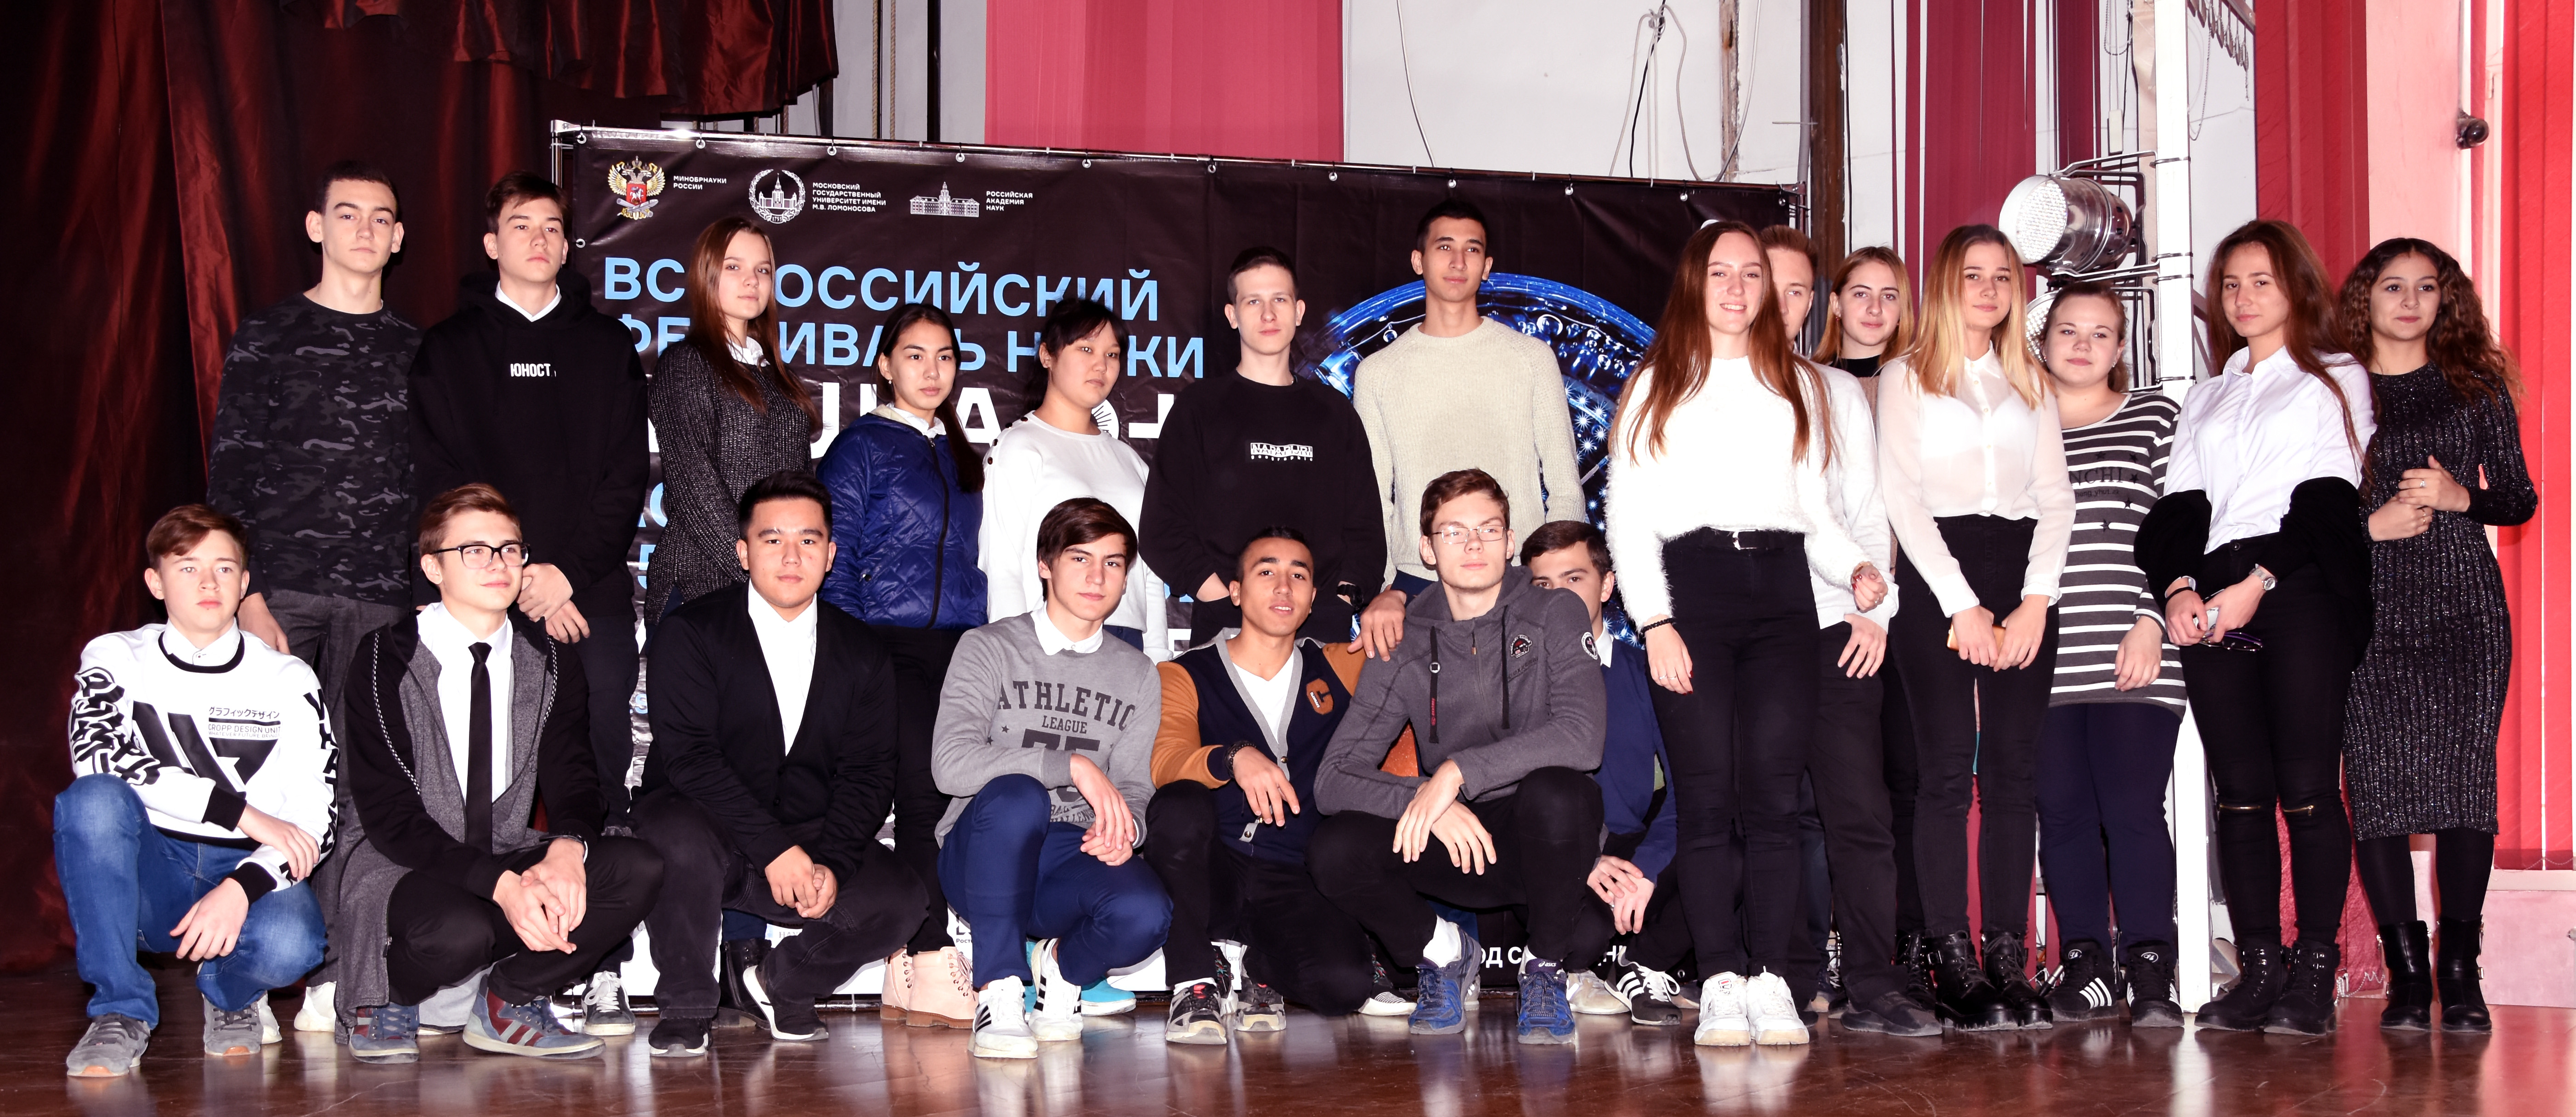 Второй день  III Регионального фестиваля студенческой науки в стенах Астраханского ГМУ